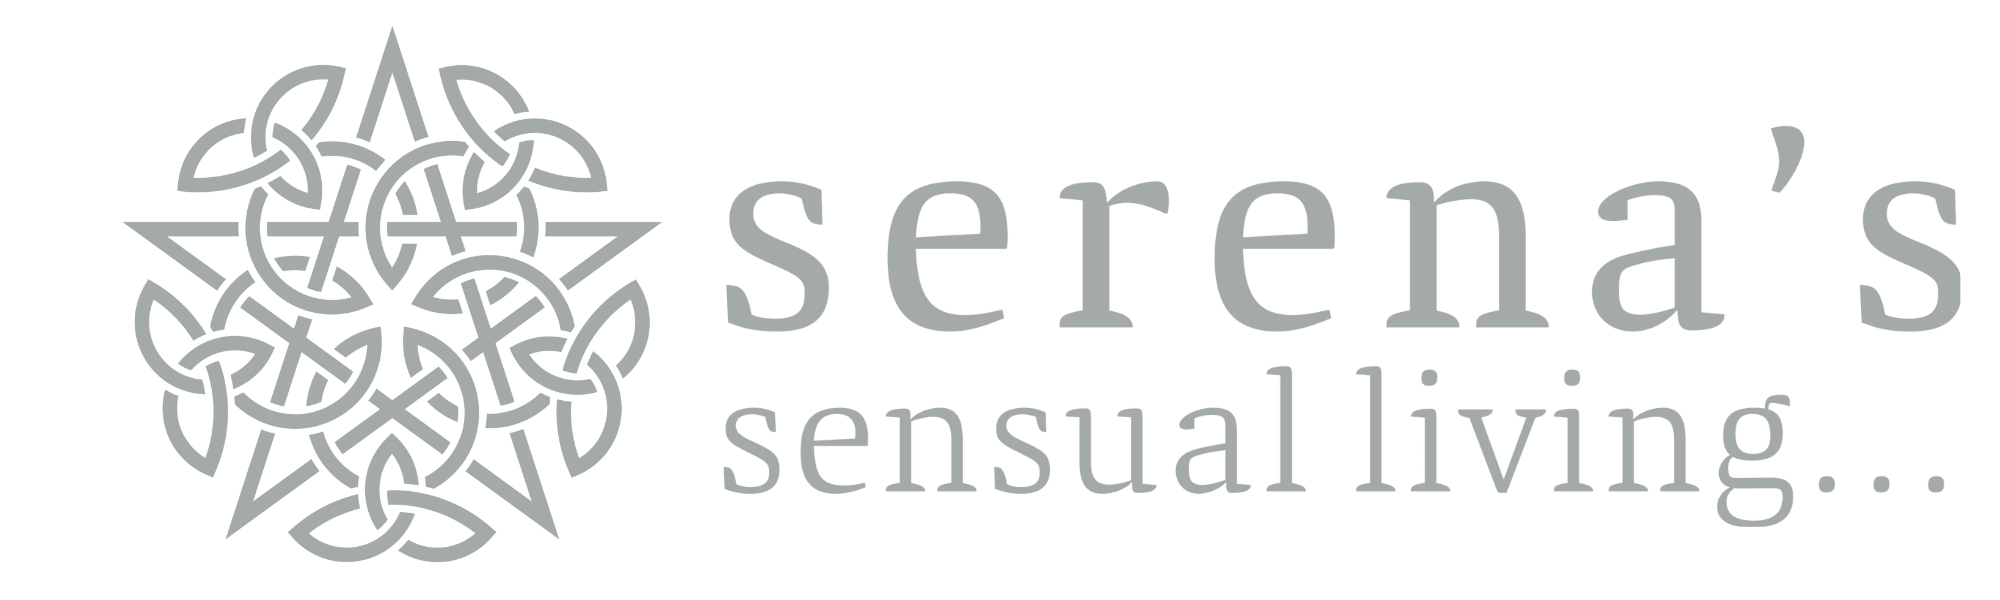 Audiochef - Serena's Sensual Living Assen 